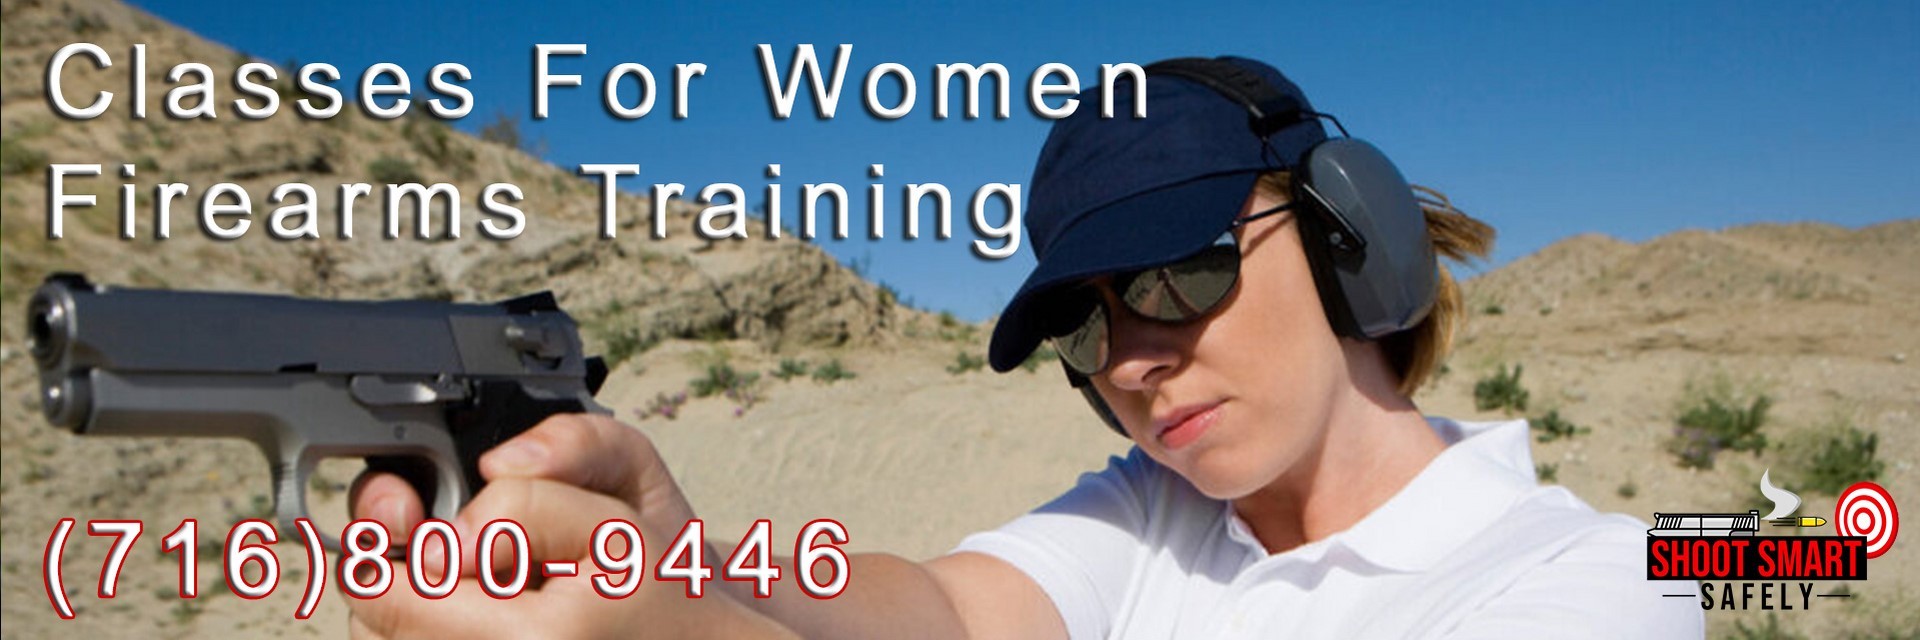 Firearms Classes For Women